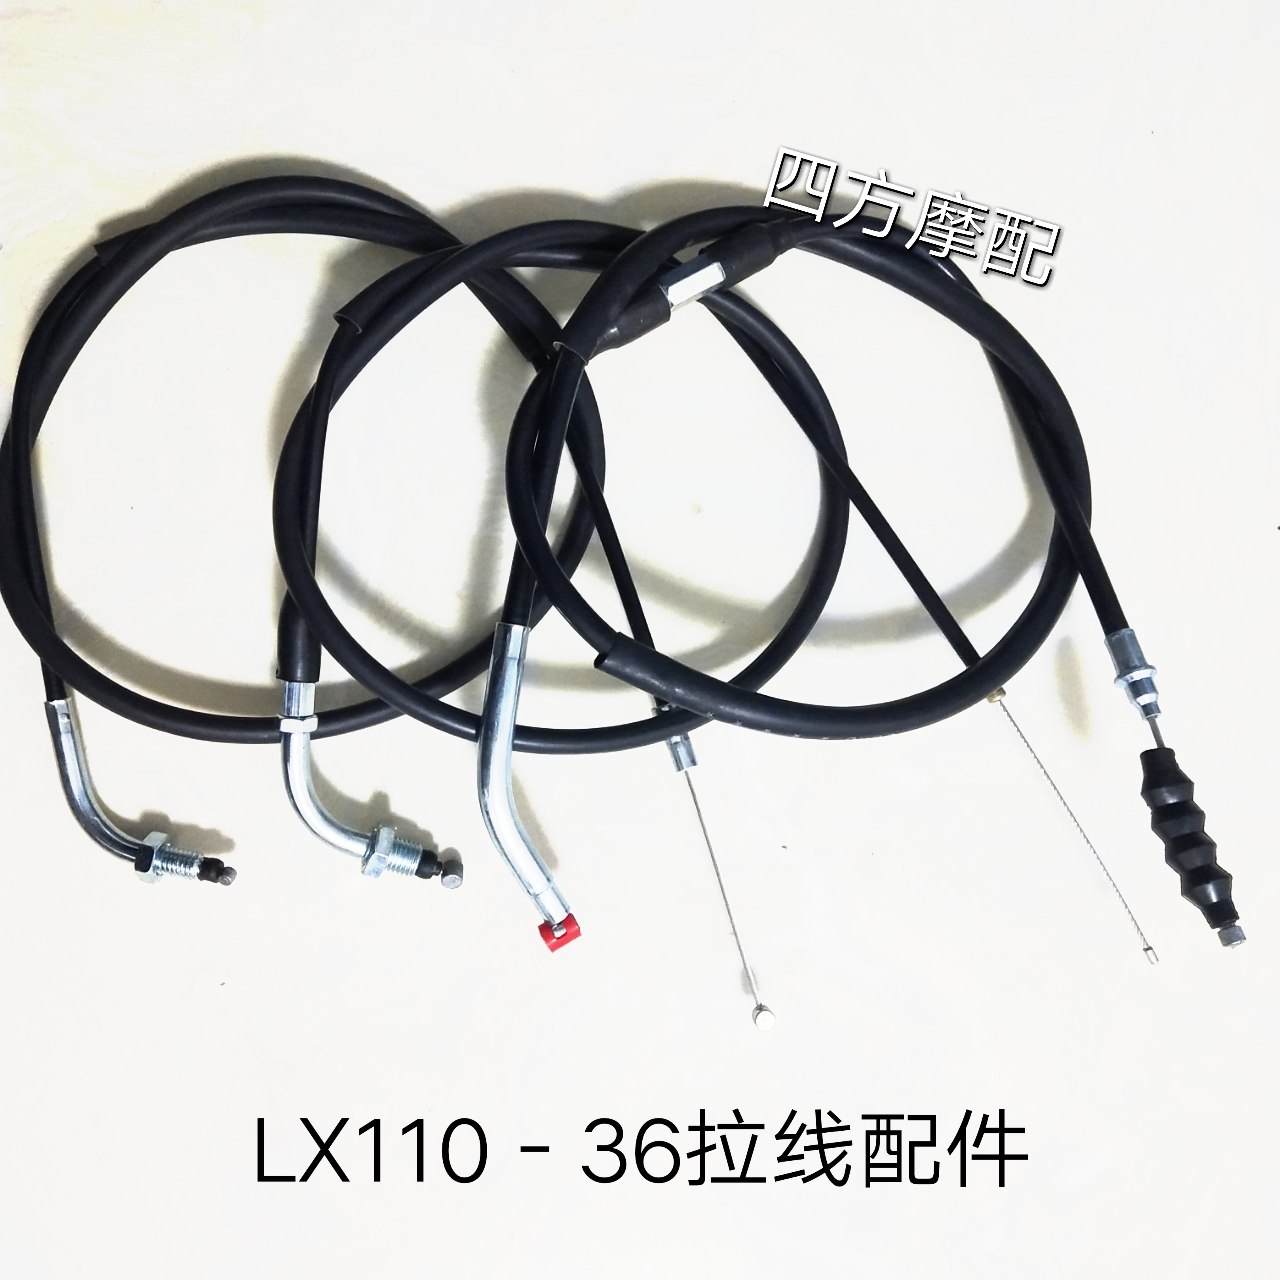 隆鑫摩托车配件LX110-36福悦油门线 离合线 风门线 里程线 刹车线